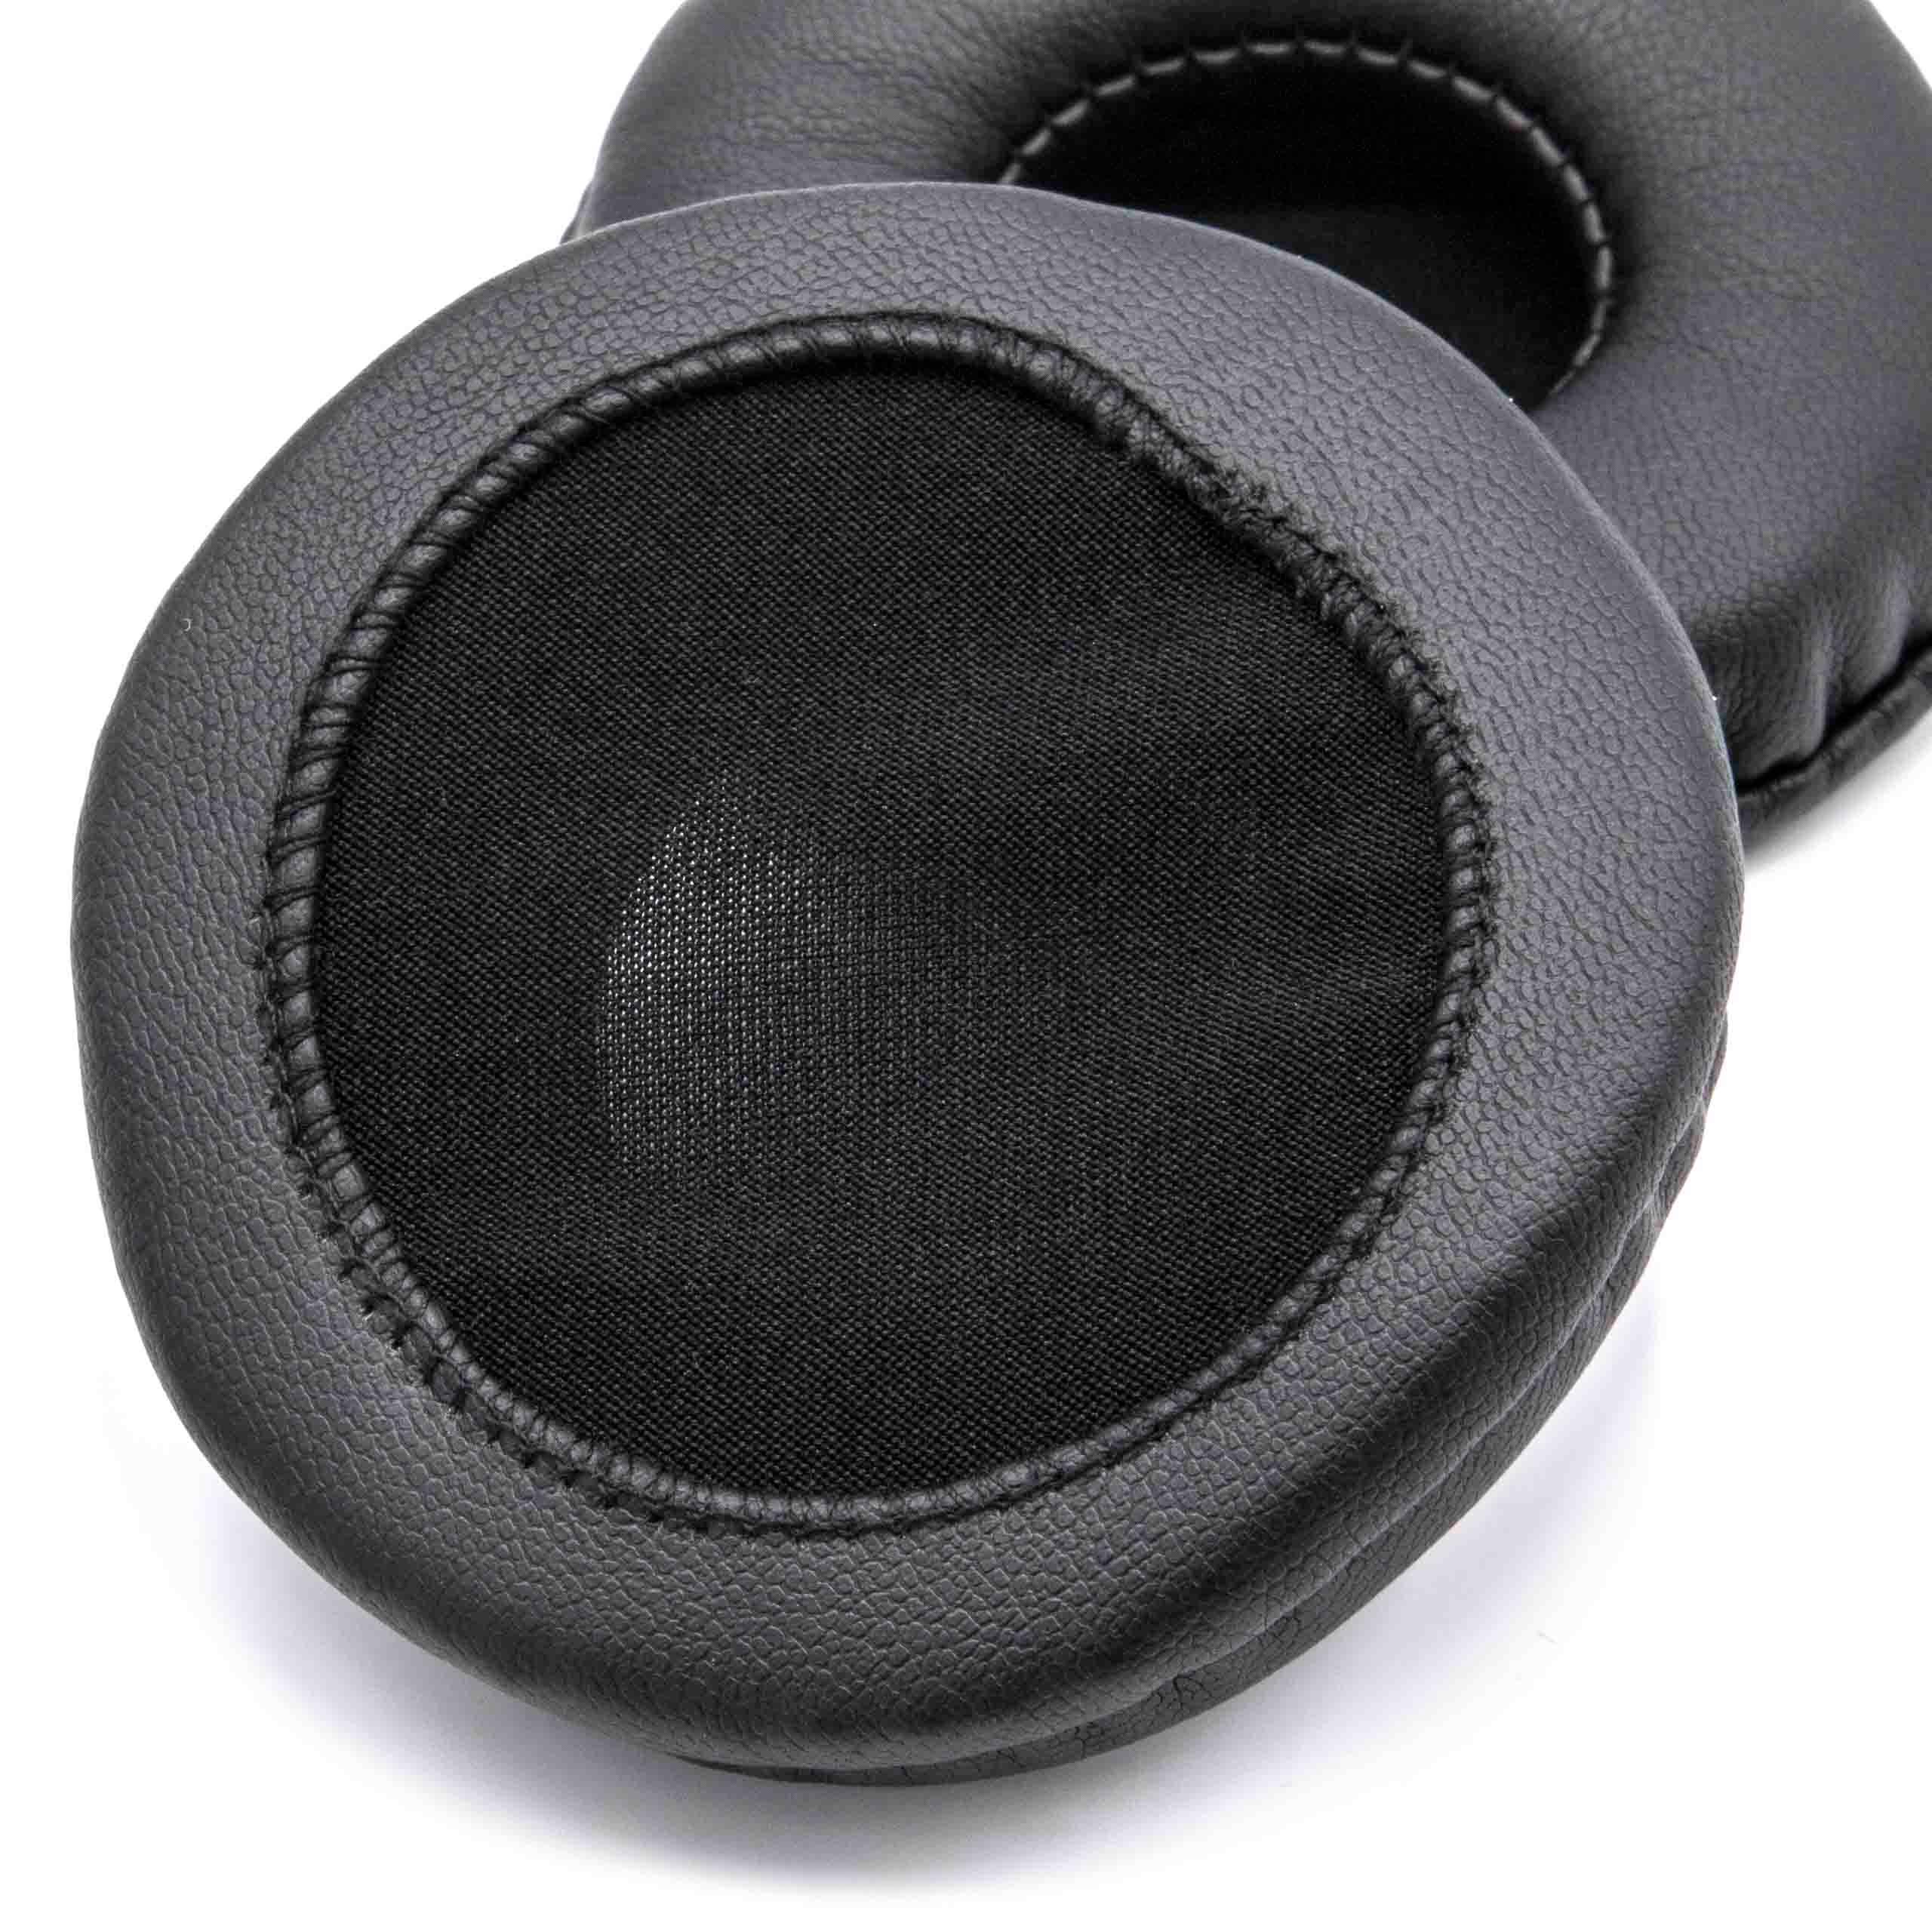 2x Almohadilla para auriculares AKG, etc. - poliuretano negro, 7cm